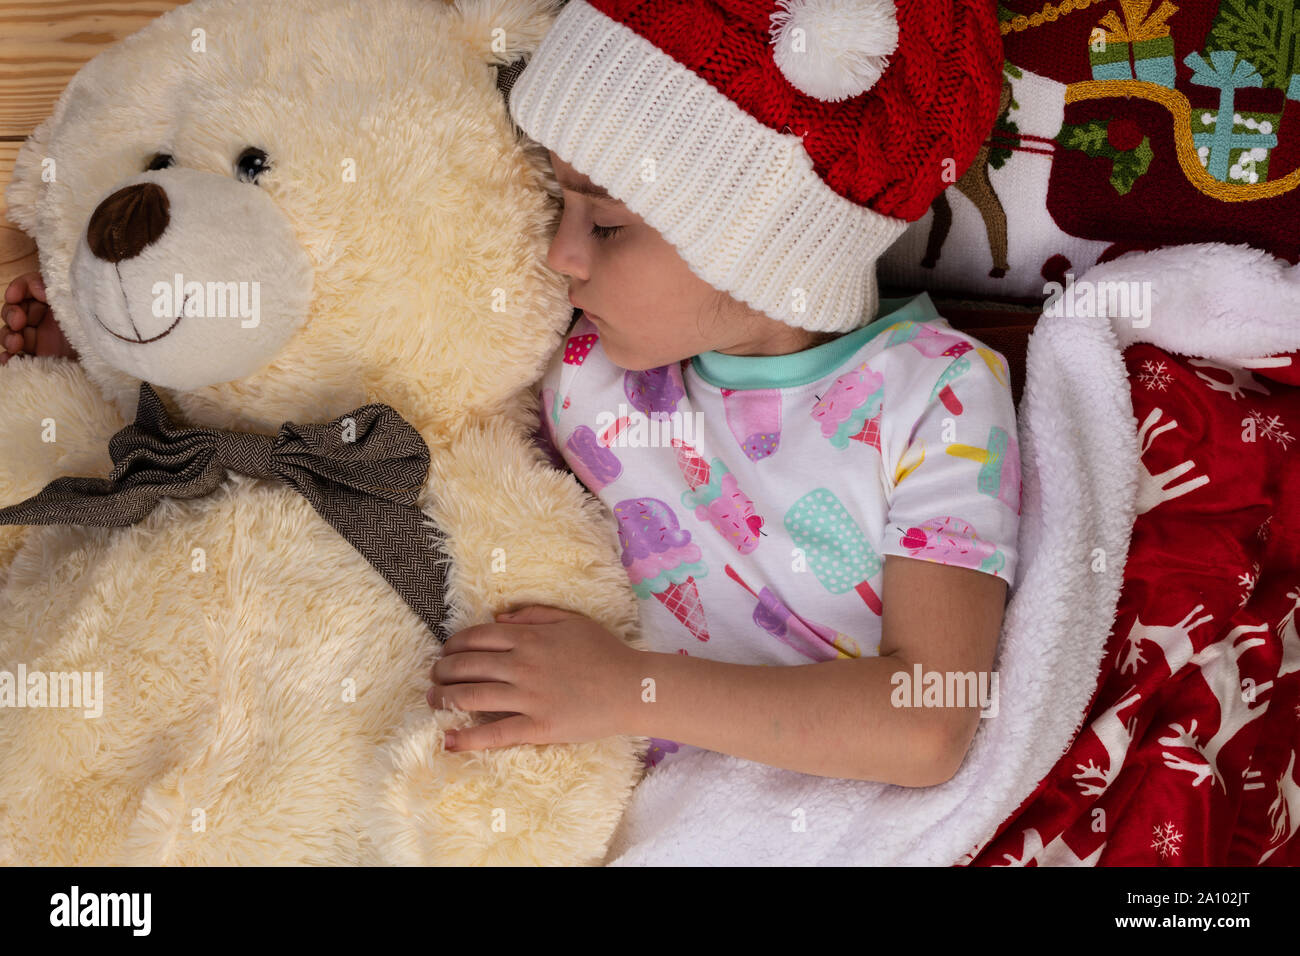 Schlafende Mädchen zu Hause an Weihnachten mit großen Teddybär Plüsch Spielzeug. Neues Jahr Winterurlaub Konzept. Stockfoto